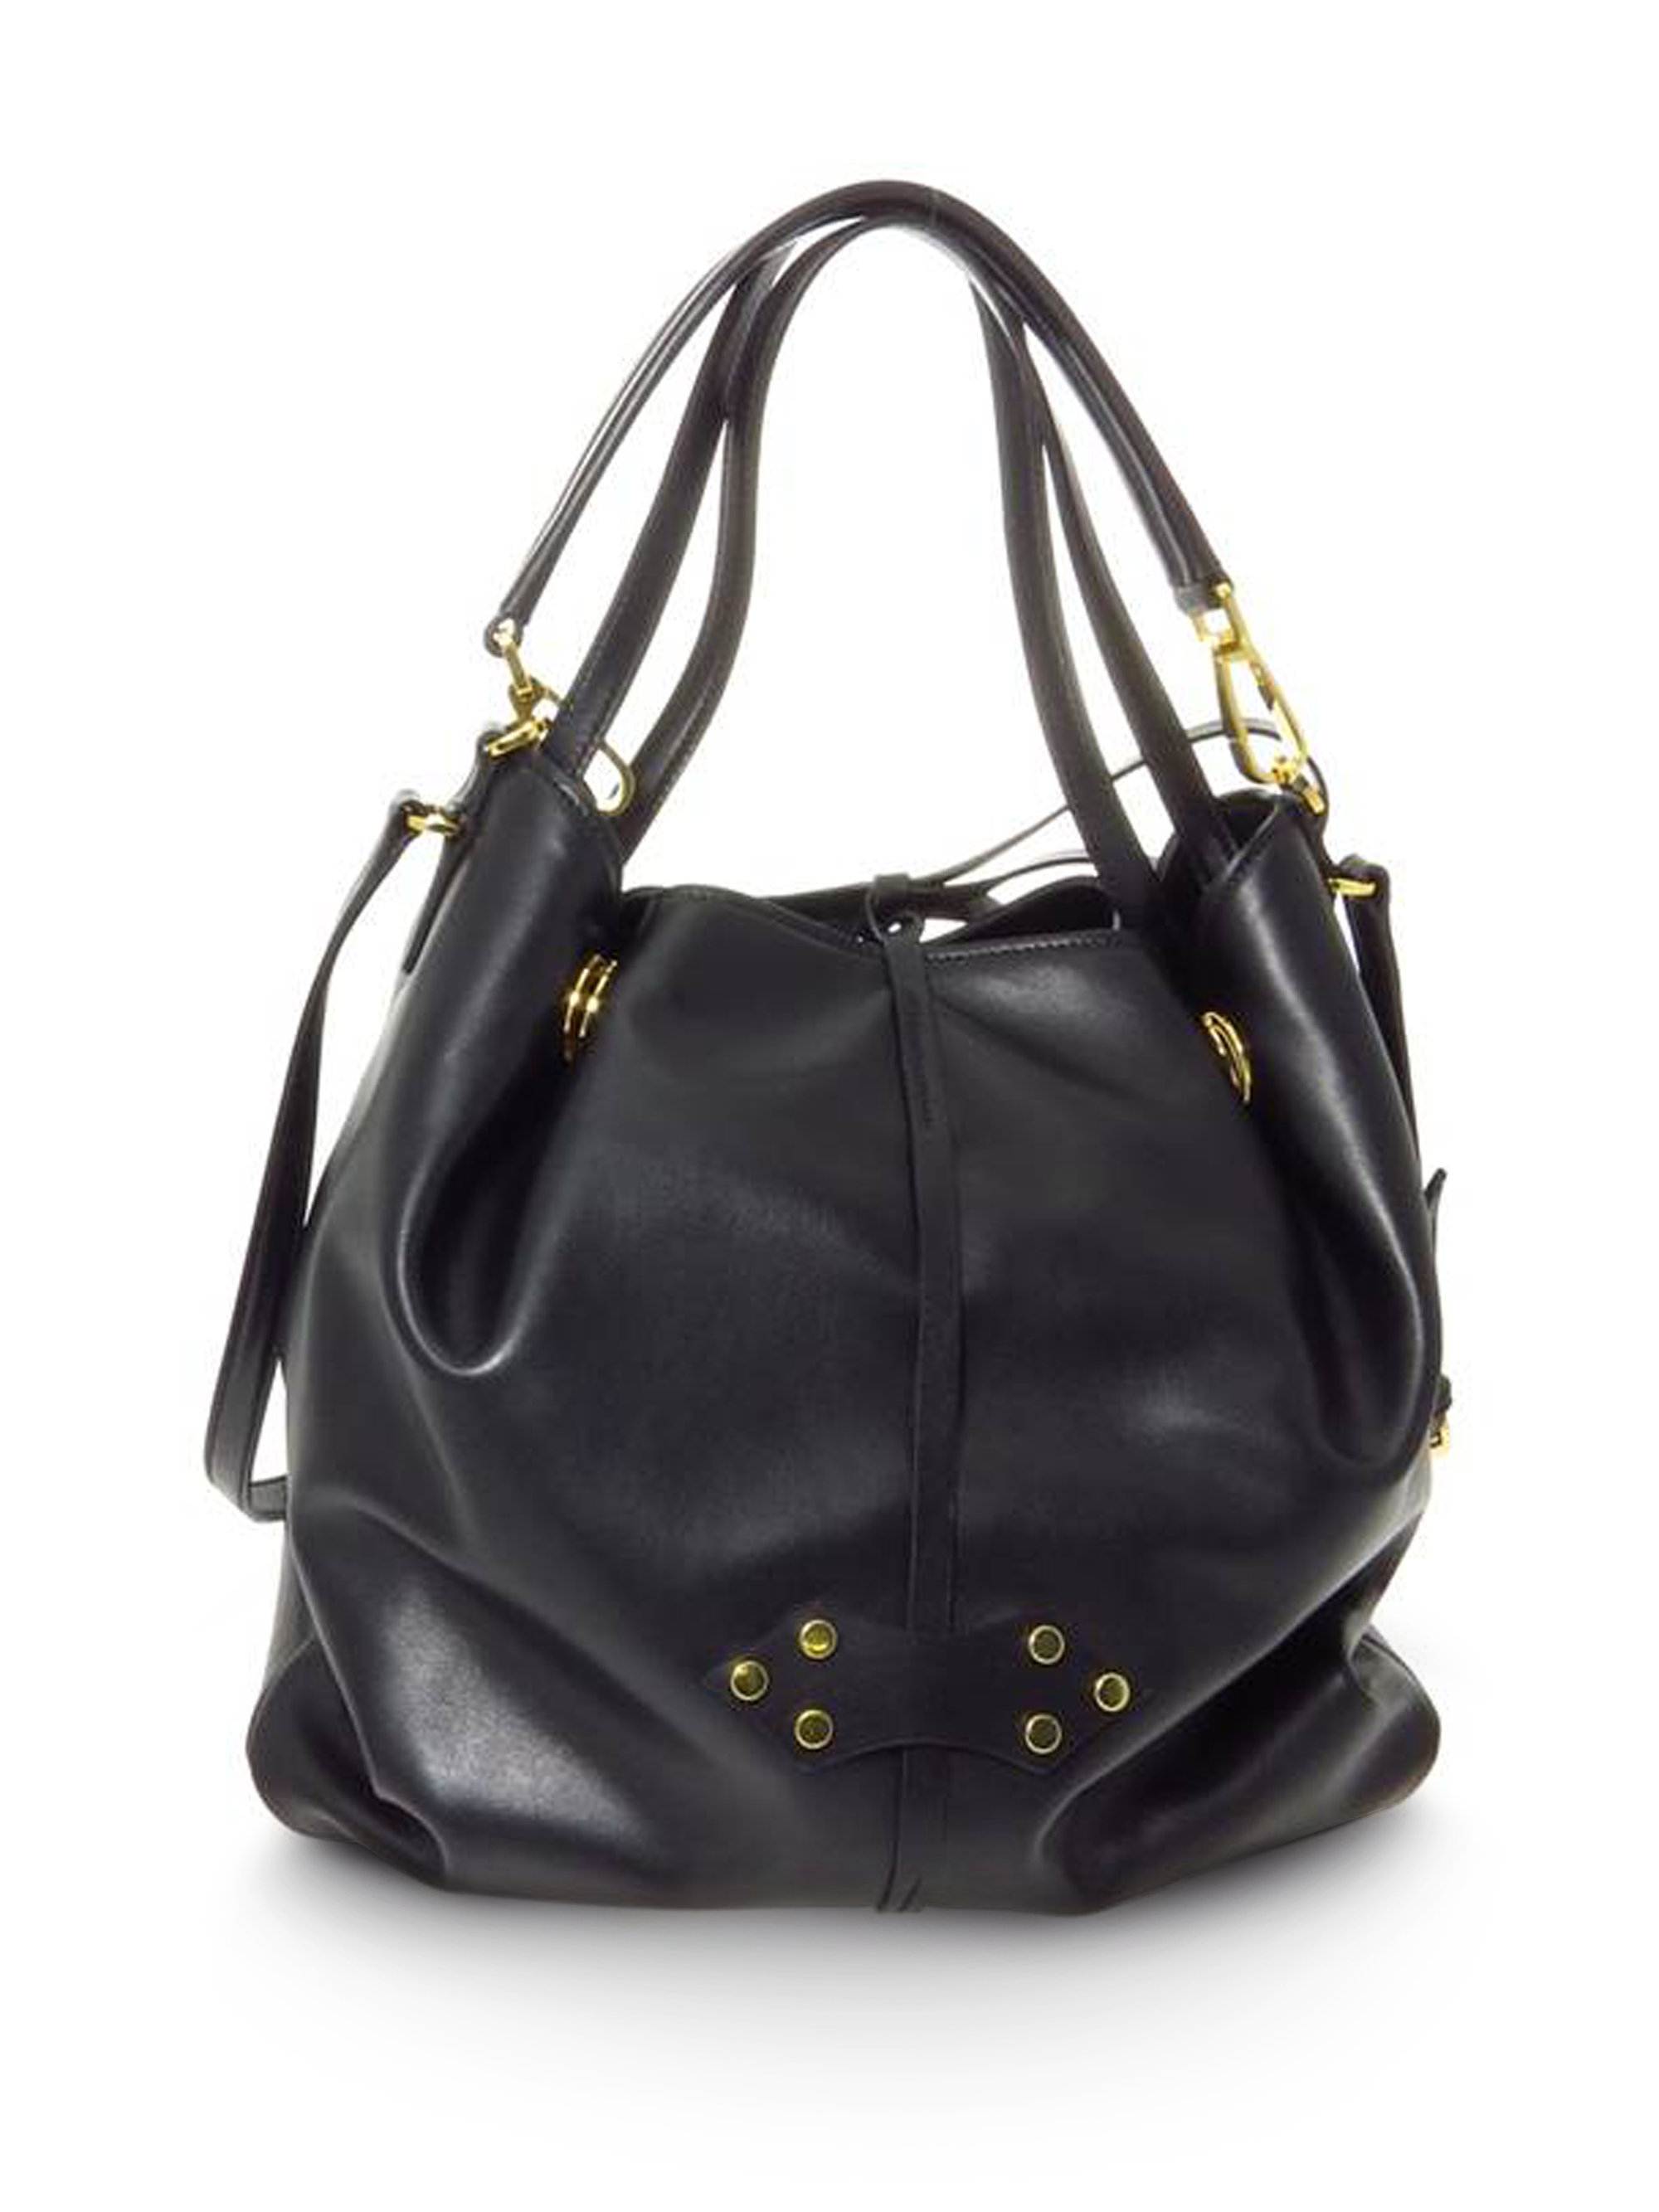 Miu Miu Large Vitello Soft Bucket Bag in Black - Lyst